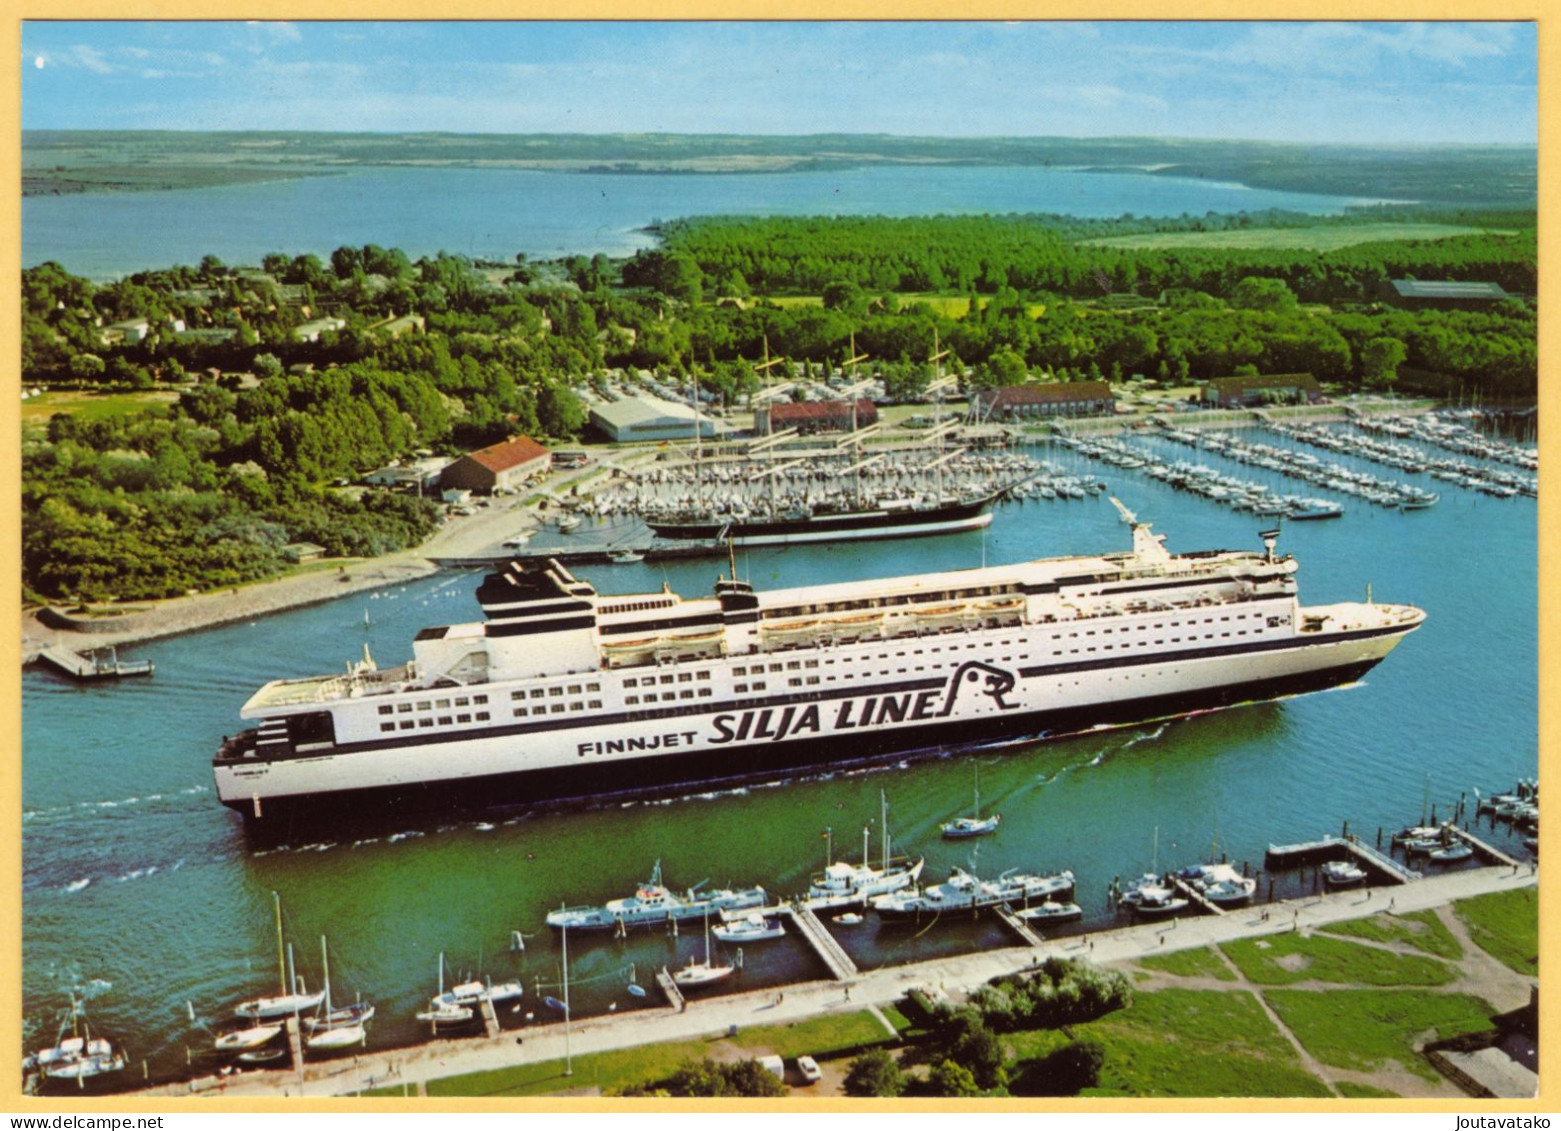 FINNJET, Silja Line - Car And Passenger Ferry - Ferries